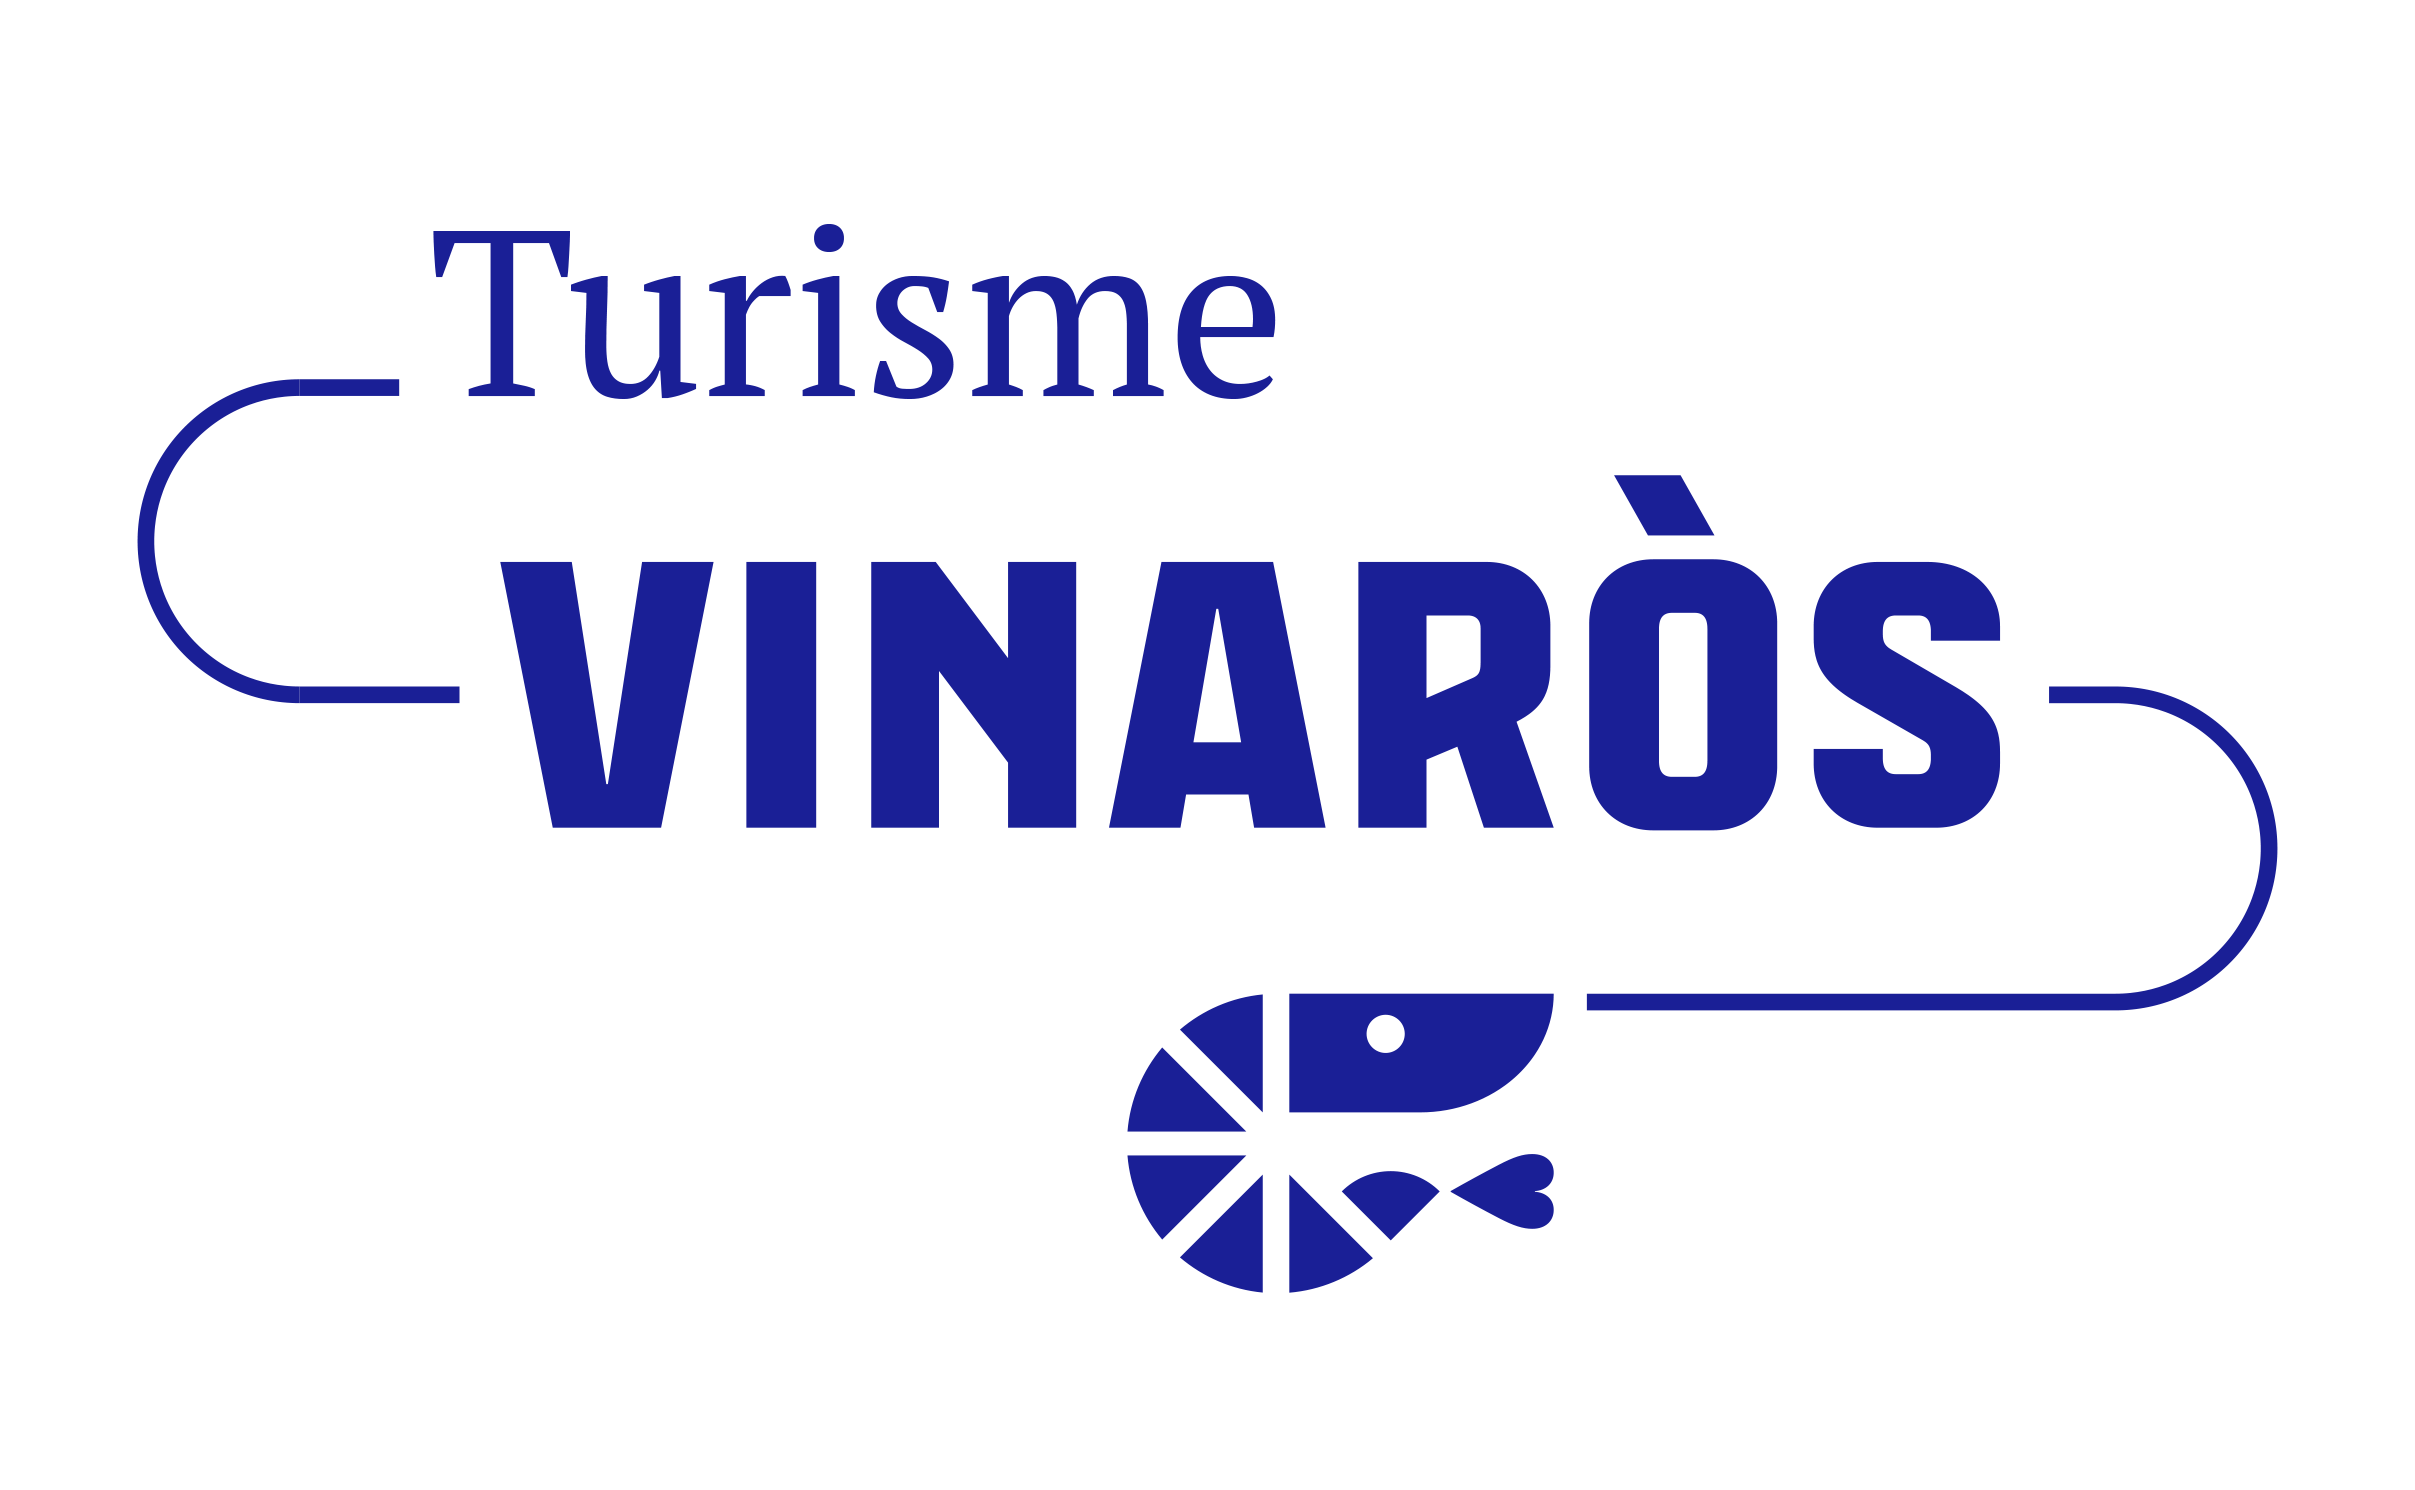 Turisme Vinaros